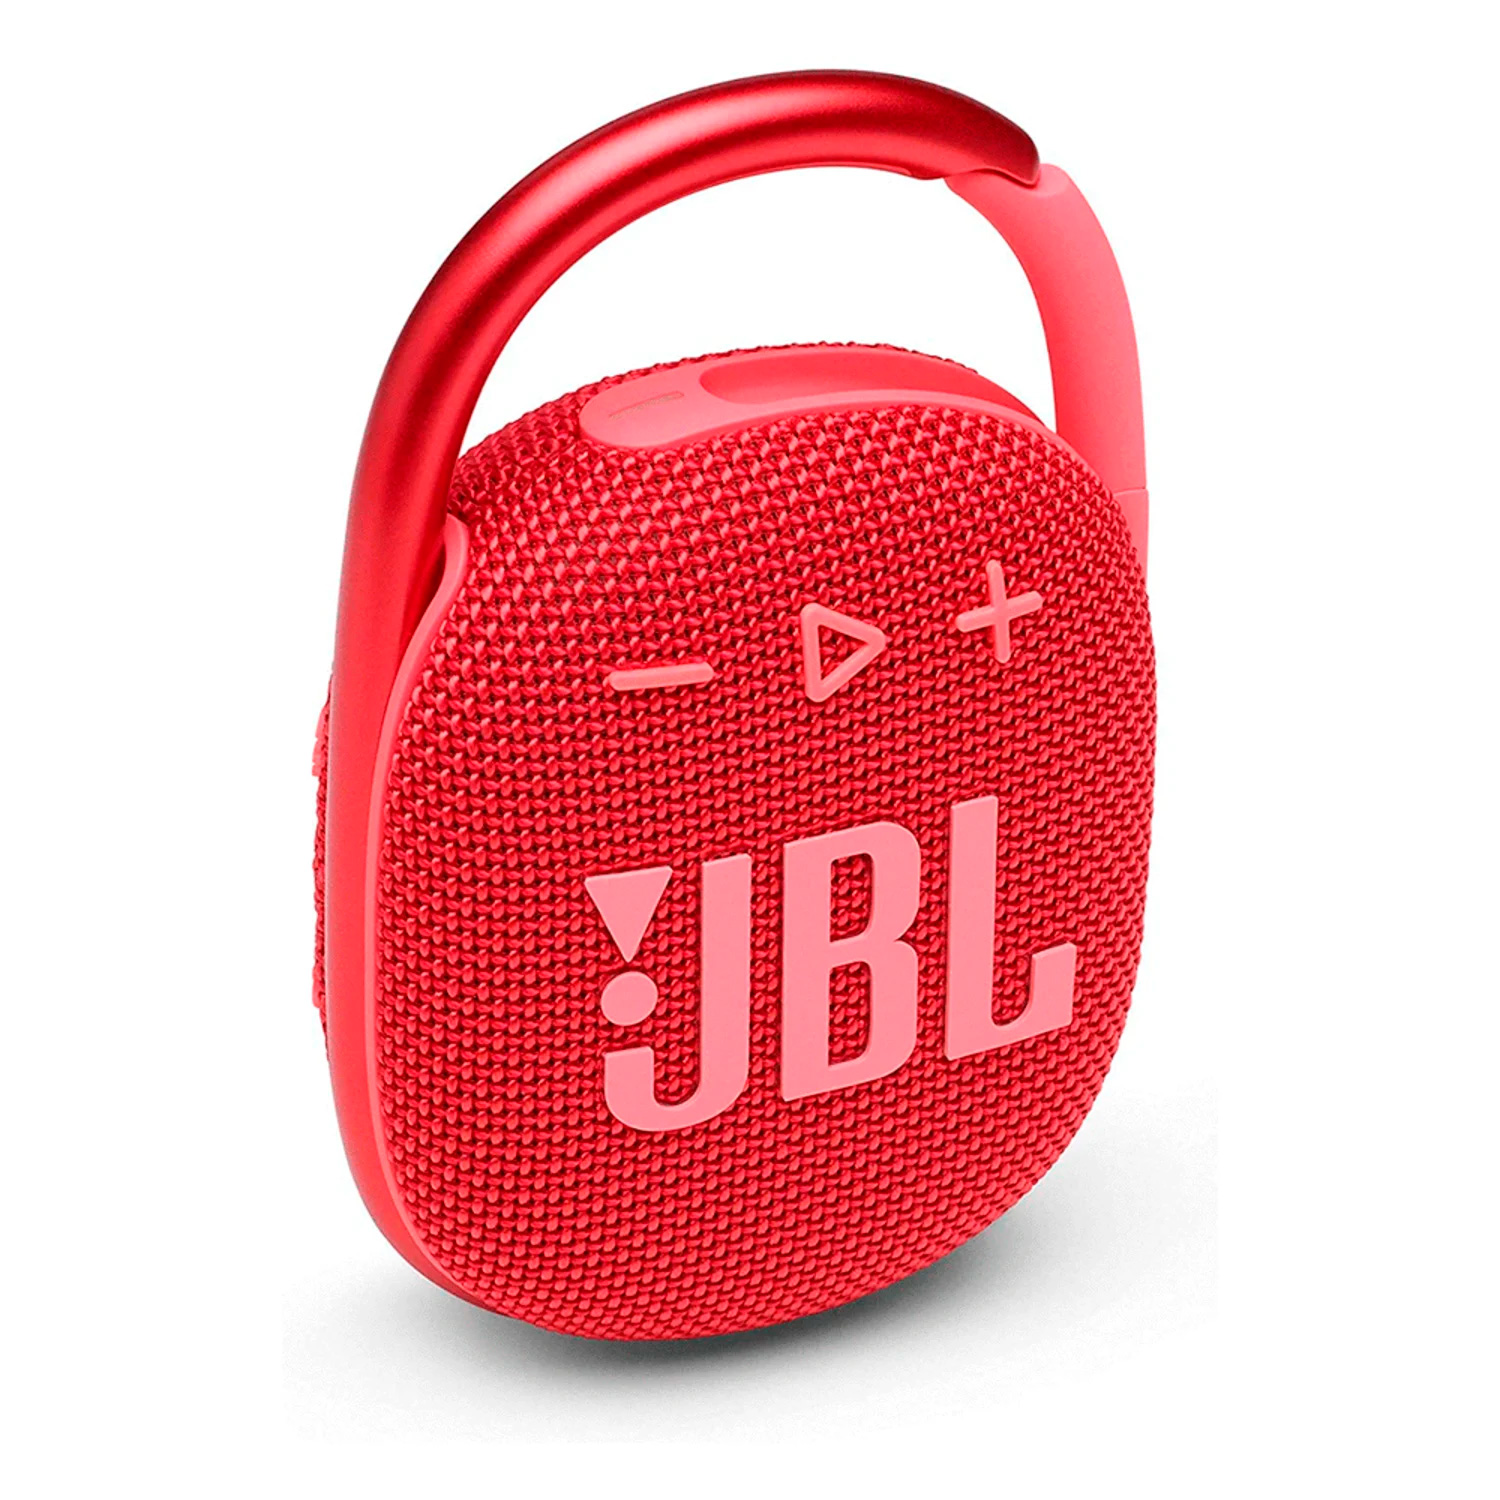 Caixa de Som JBL Clip 4 - Red